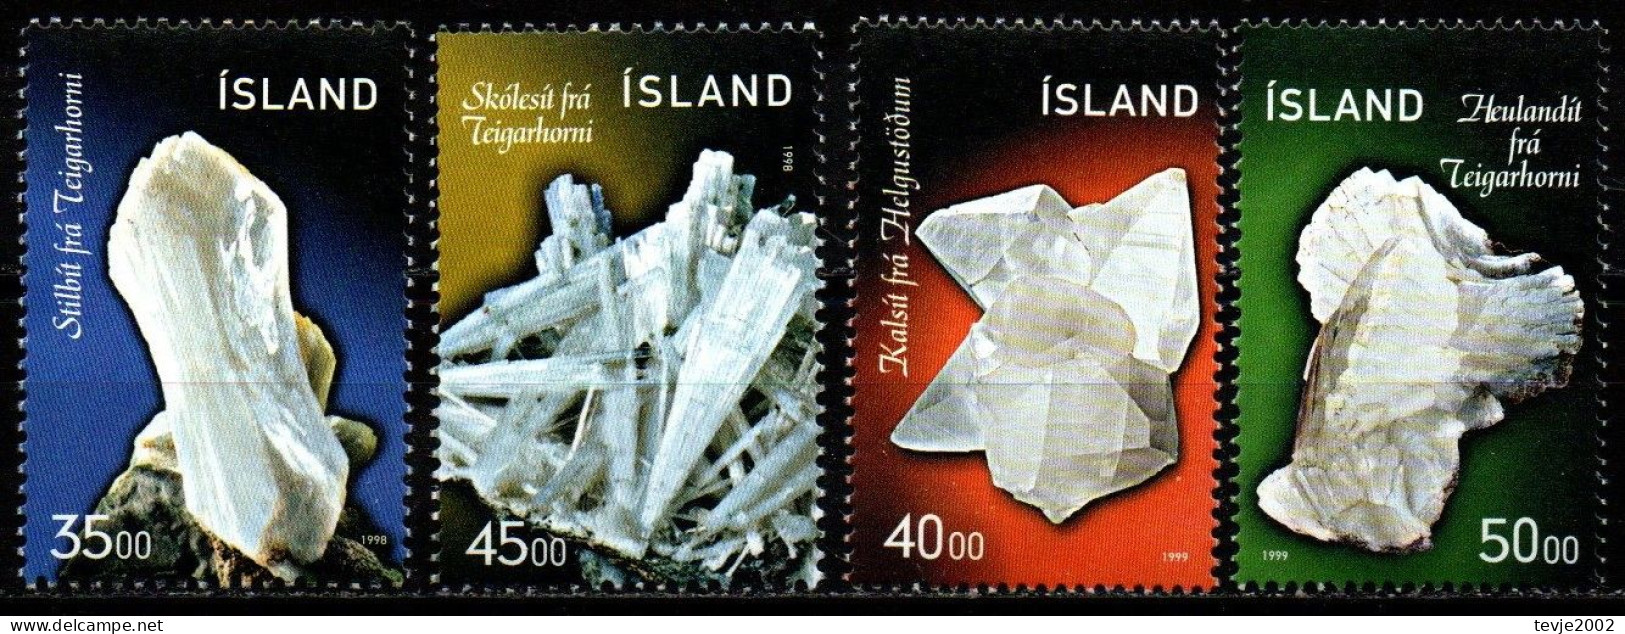 Island 1998/99 - Mi.Nr. 893/894 + 917/918 - Postfrisch MNH - Mineralien Minerals - Minerales